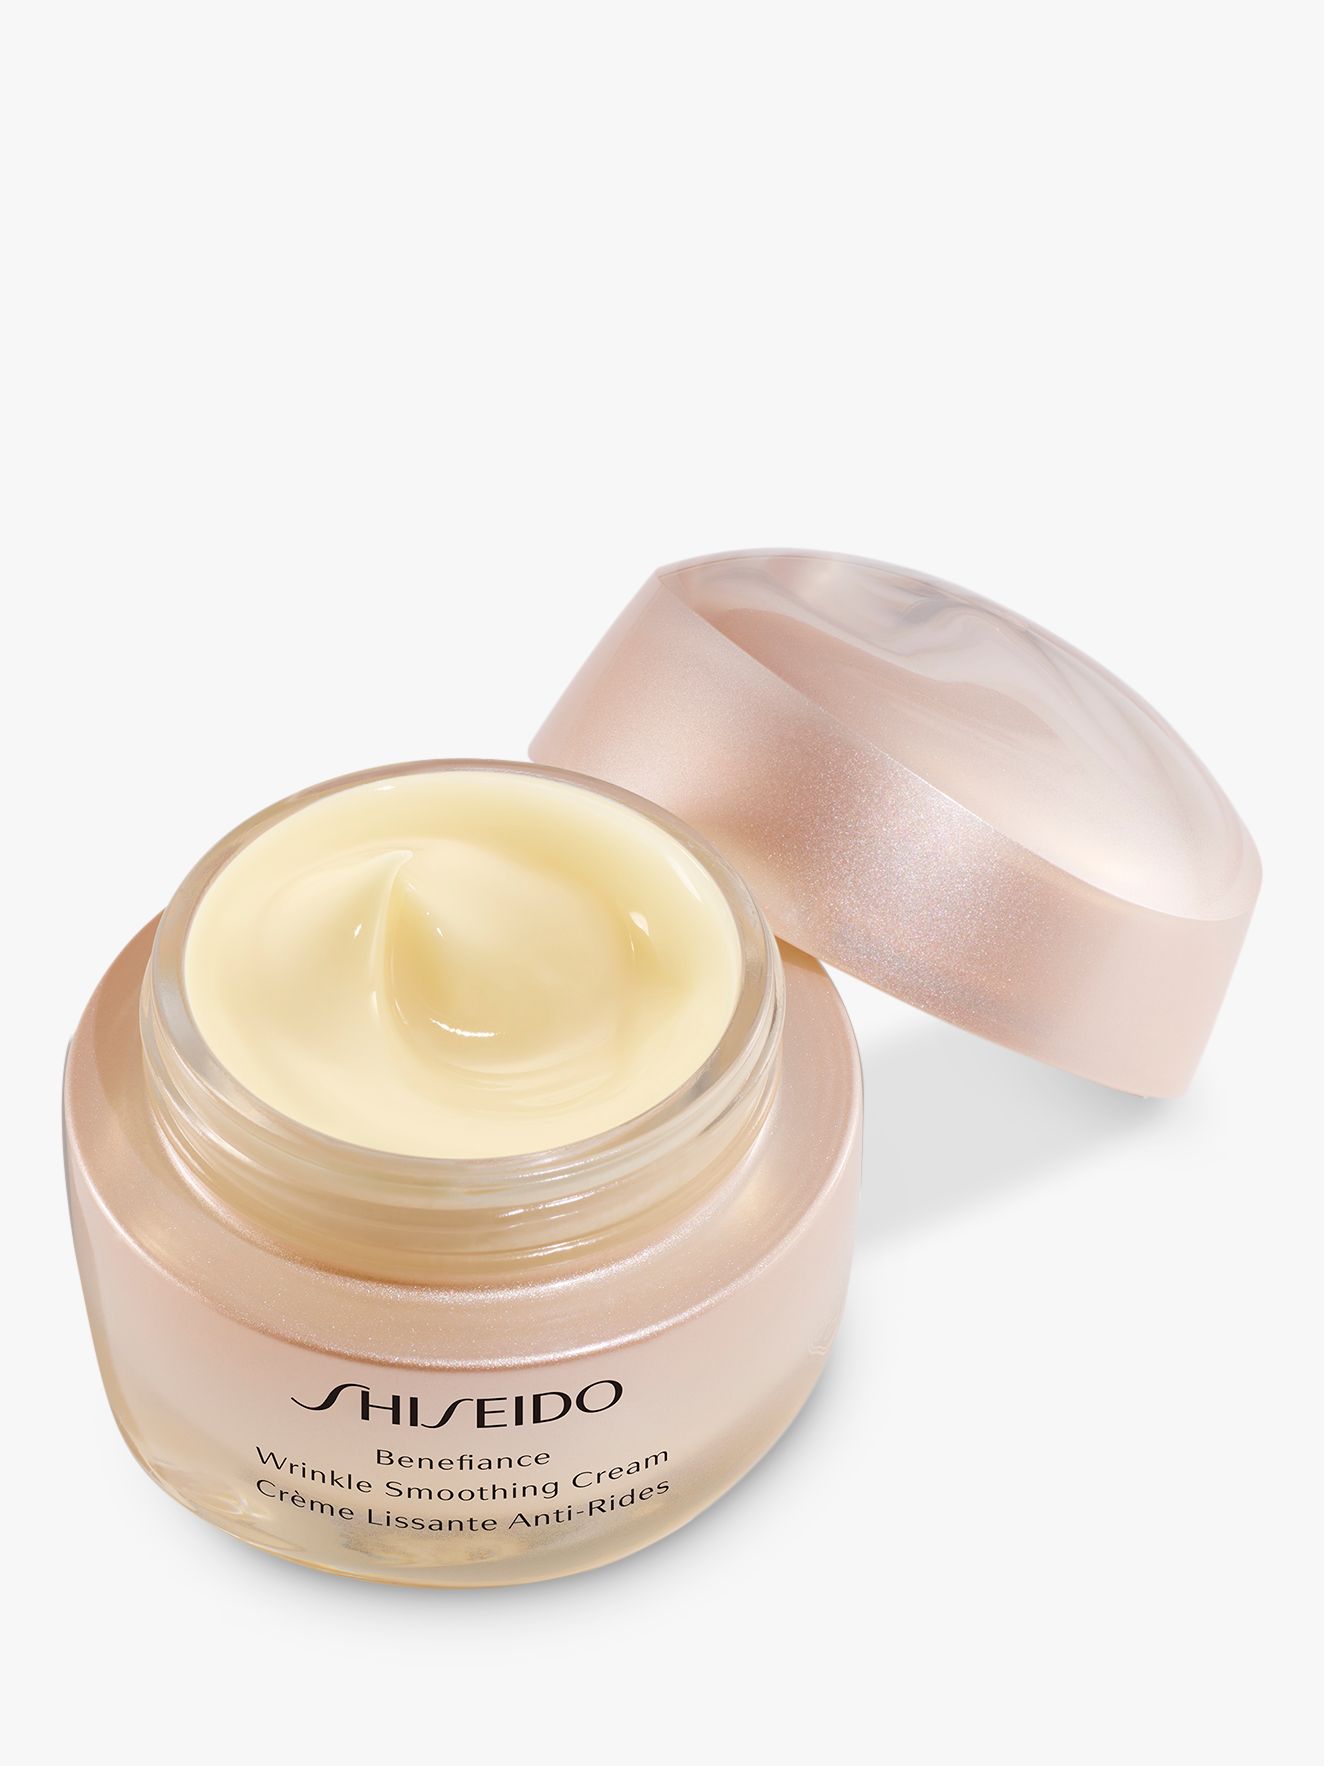 Shiseido Benefiance Wrinkle Smoothing Cream, 50ml 2